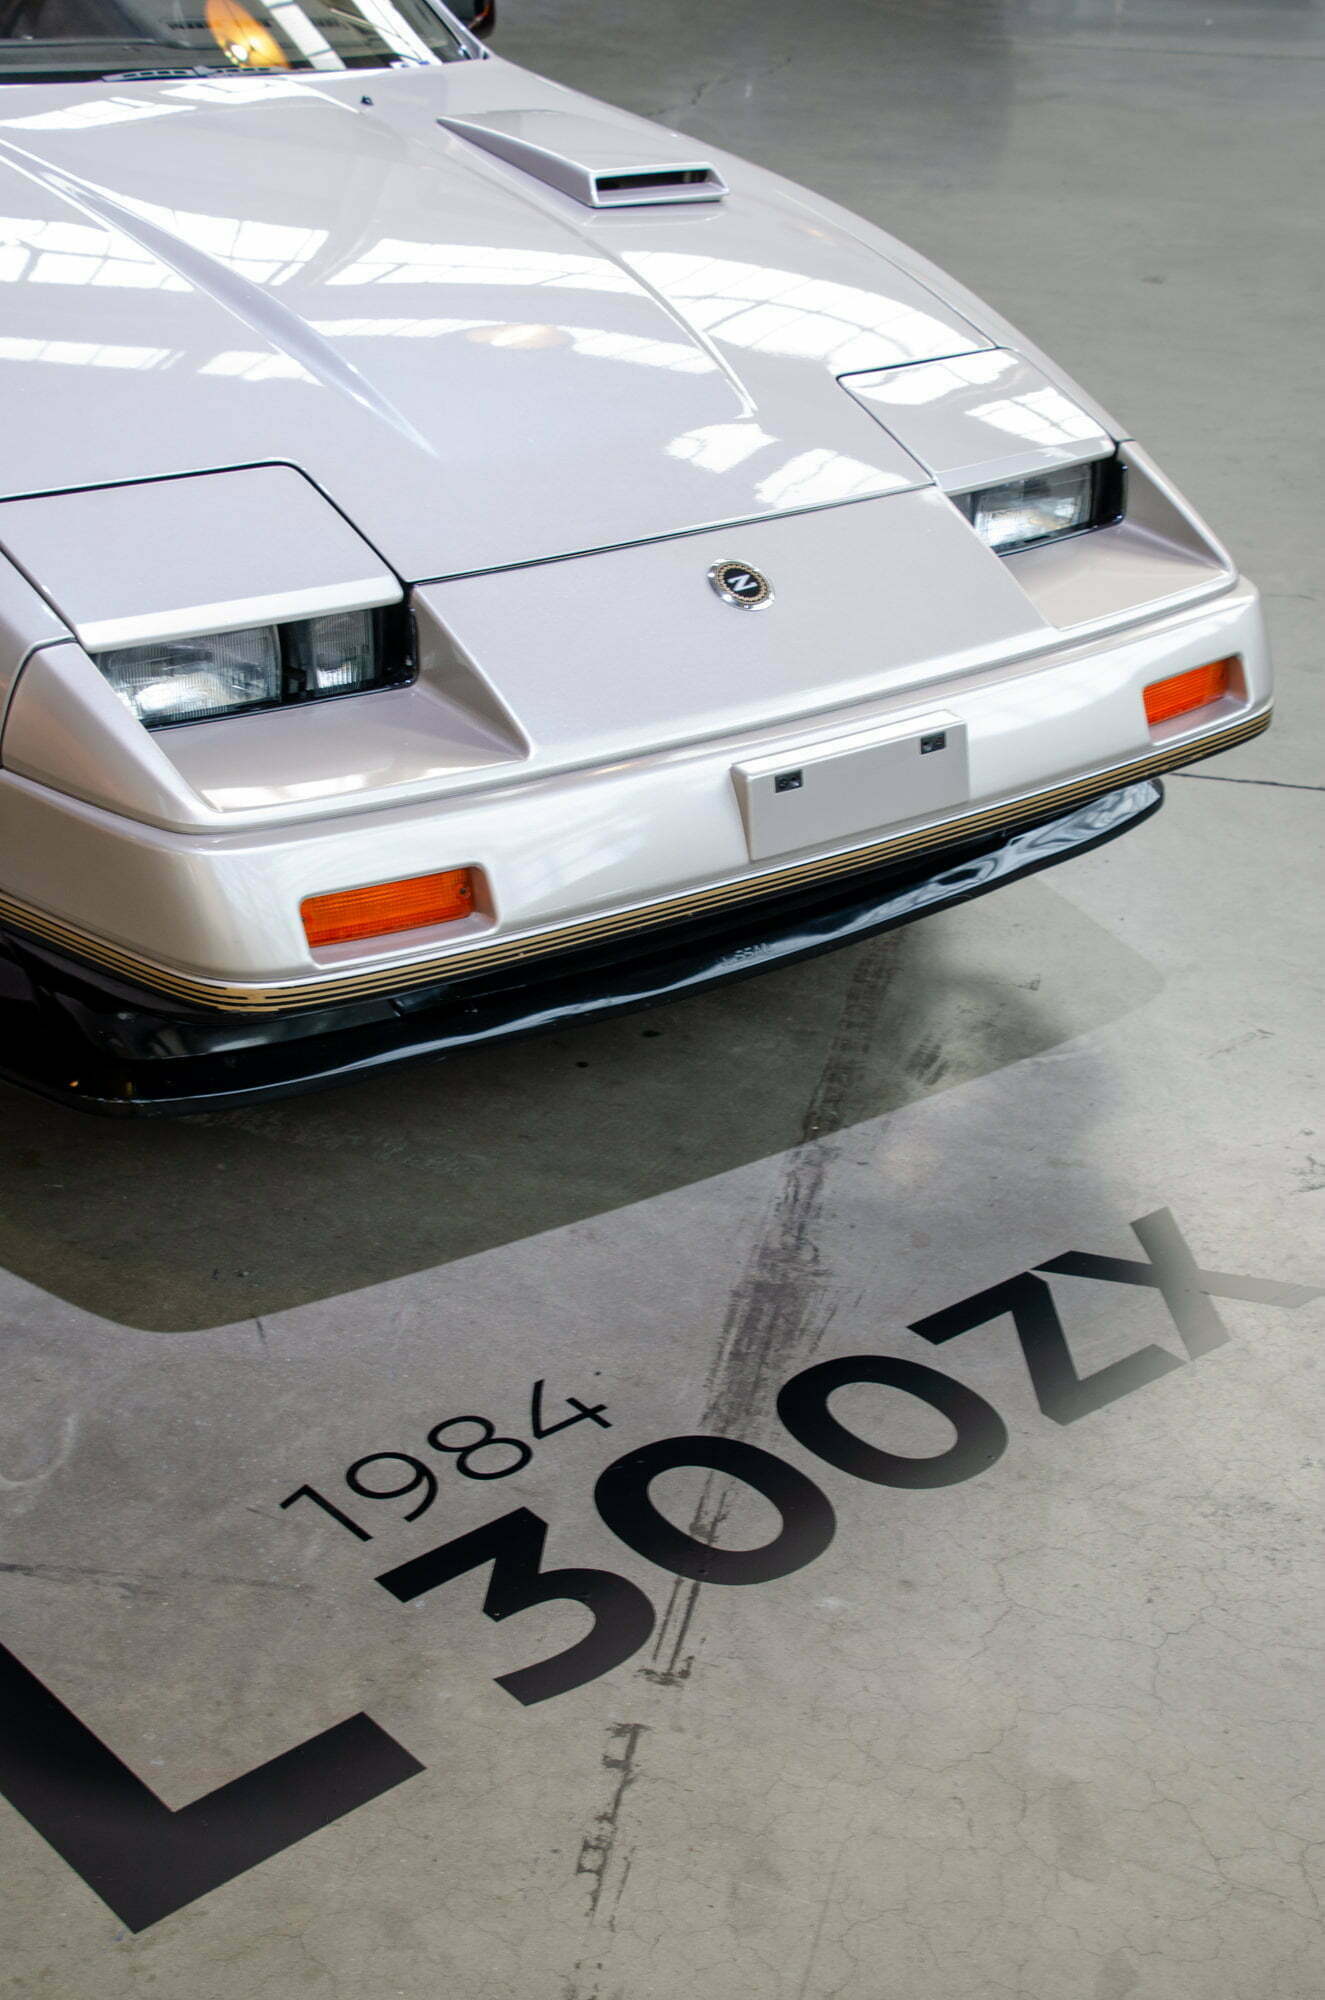 1984 300ZX, Nissan Z